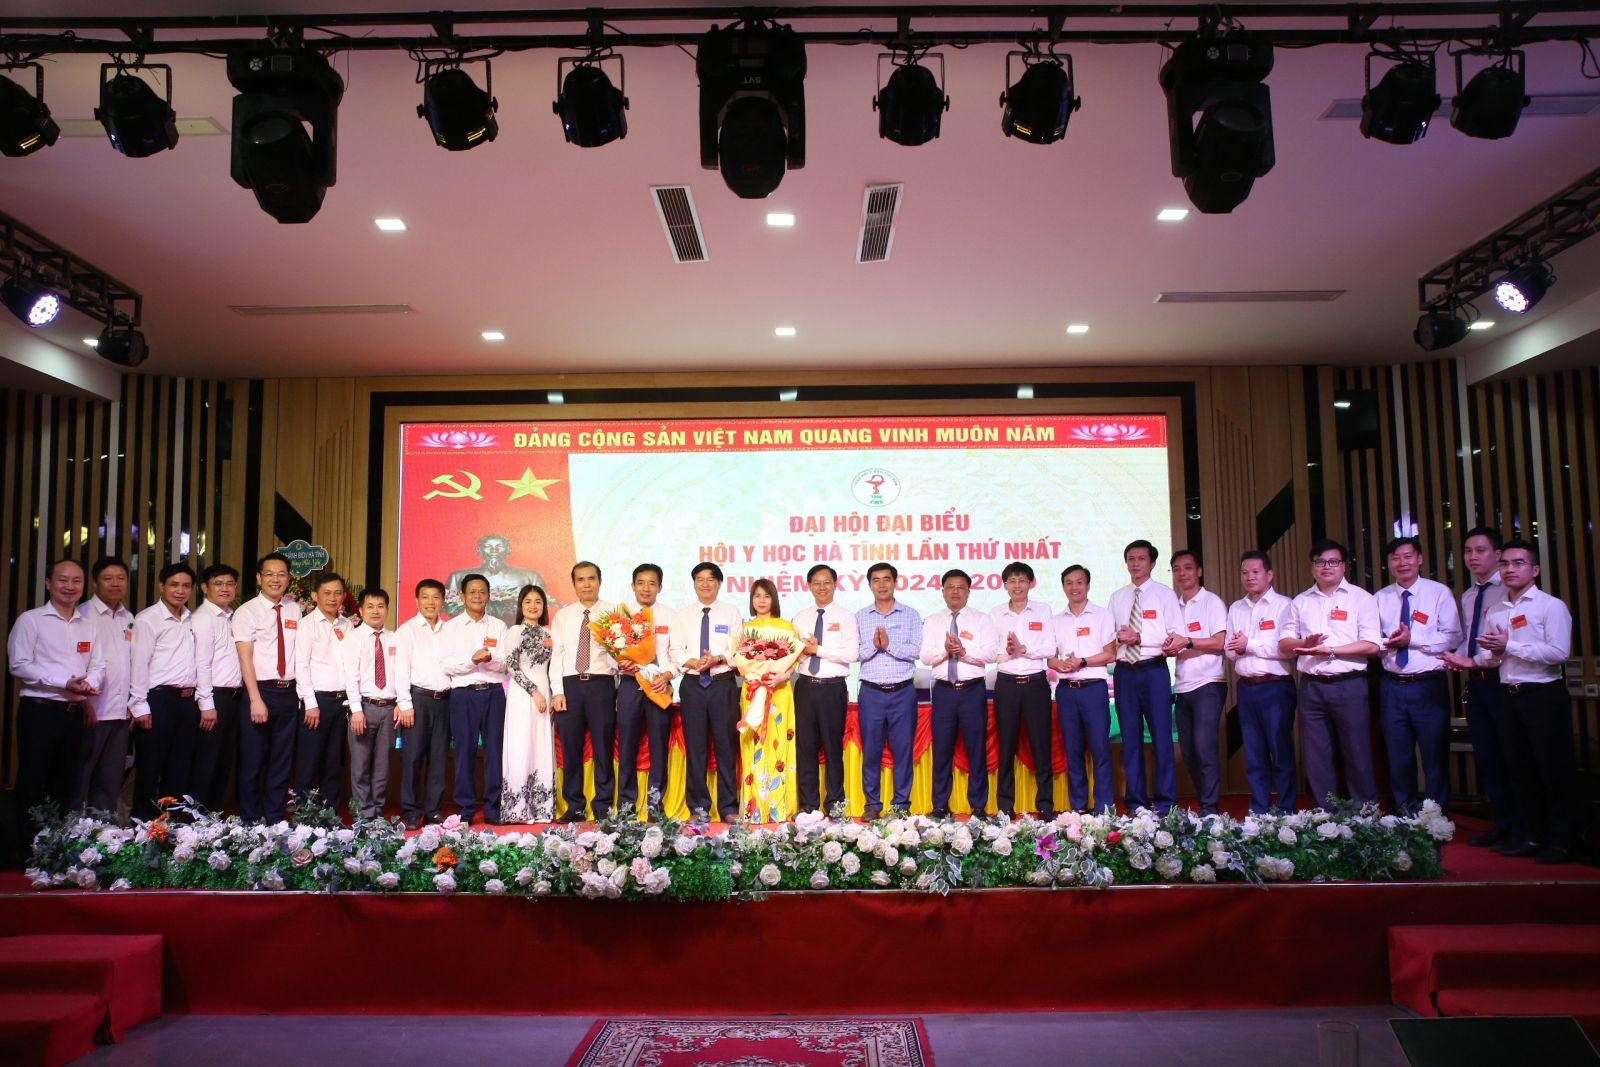 Ông Lê Chánh Thành được bầu giữ chức Chủ tịch Hội Y học Hà Tĩnh